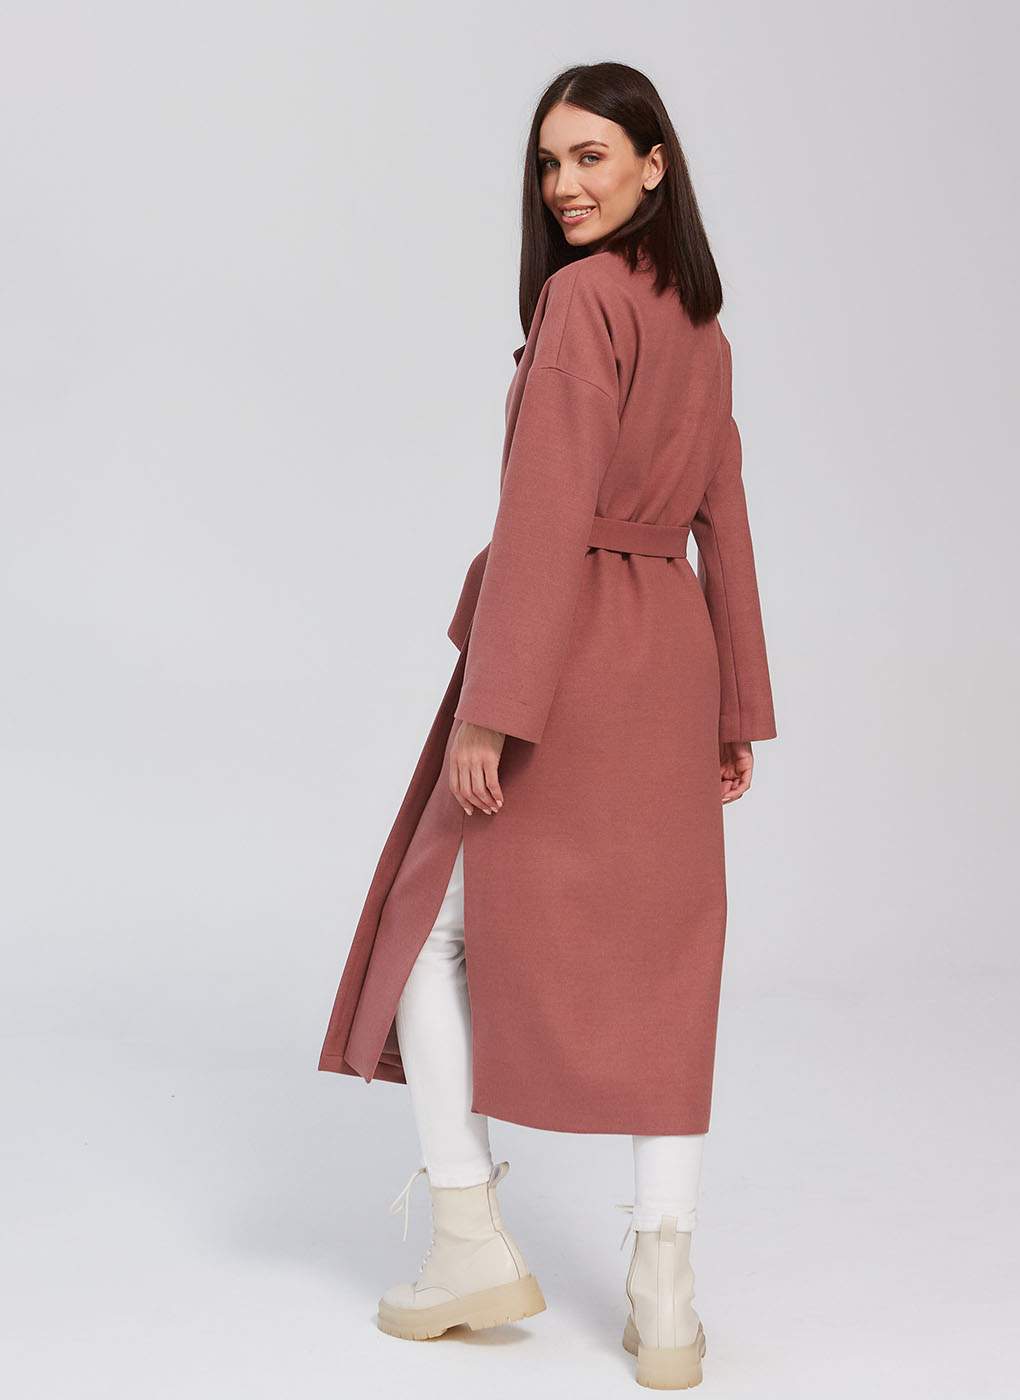 Пальто женское Giulia Rosetti 56207 розовое 46 RU